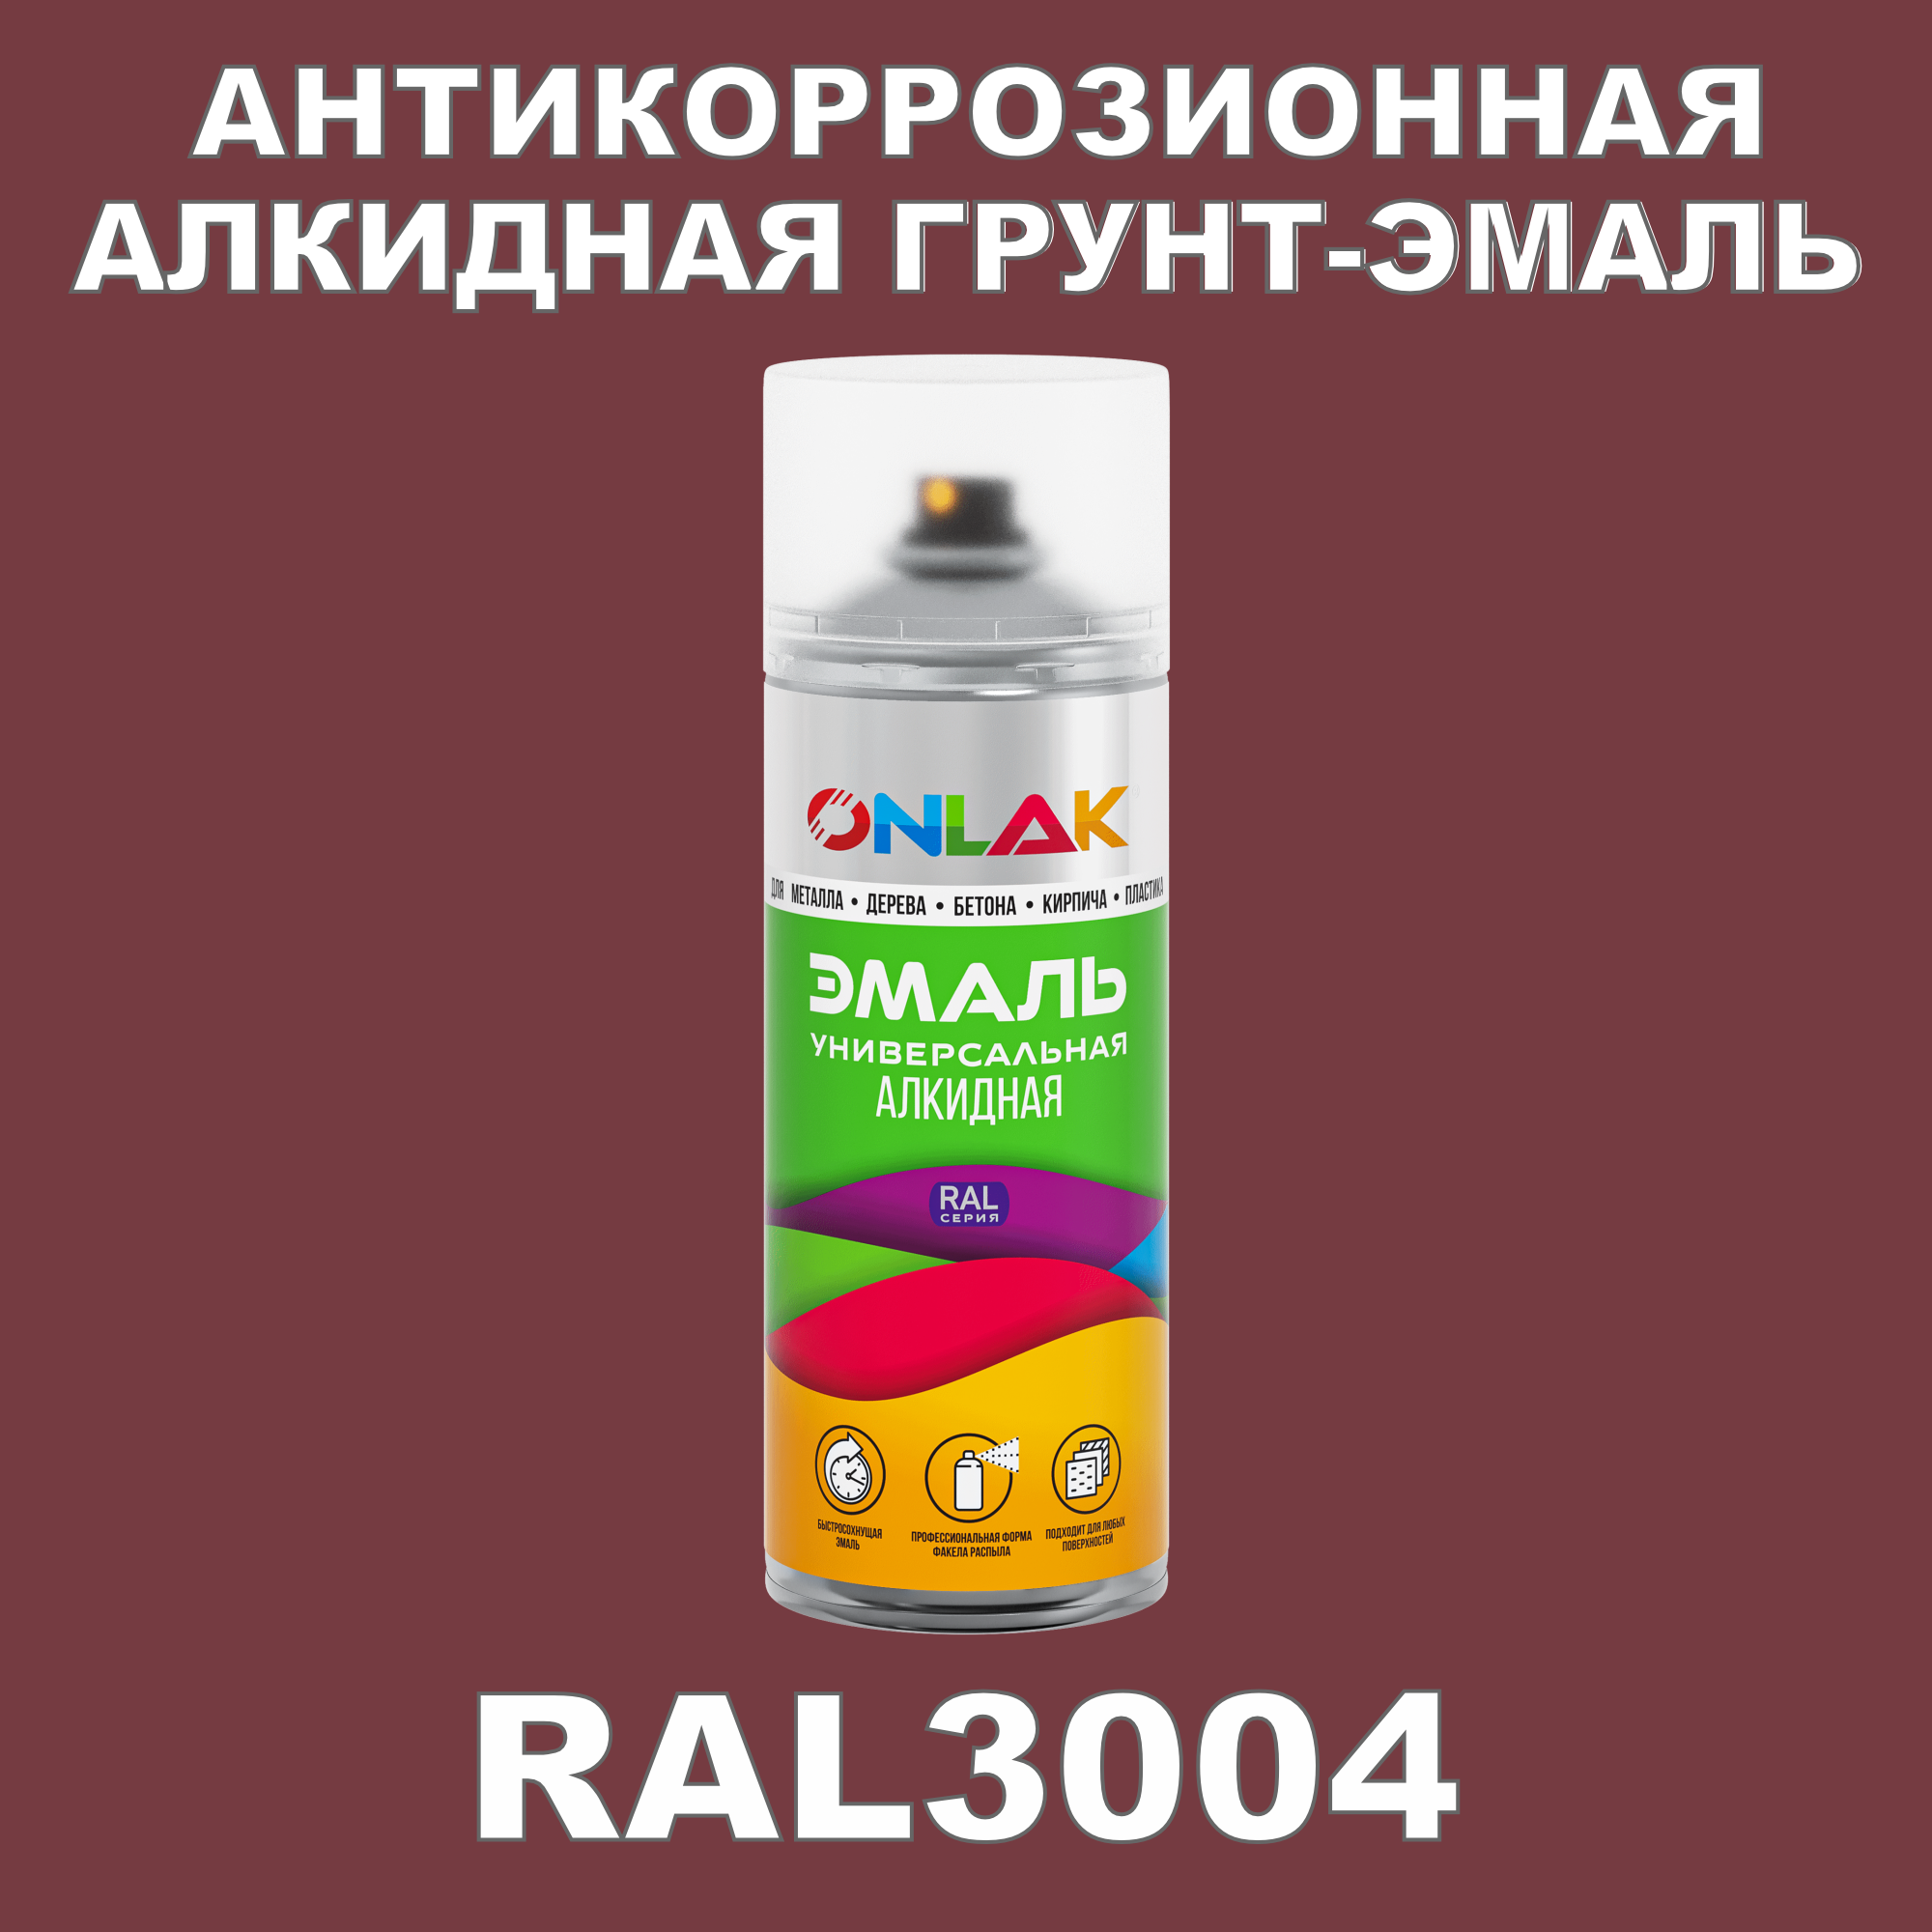 Антикоррозионная грунт-эмаль ONLAK RAL3004 матовая для металла и защиты от ржавчины эмаль аэрозольная inral universal вишневая ral3004 400 мл 26 7 6 023